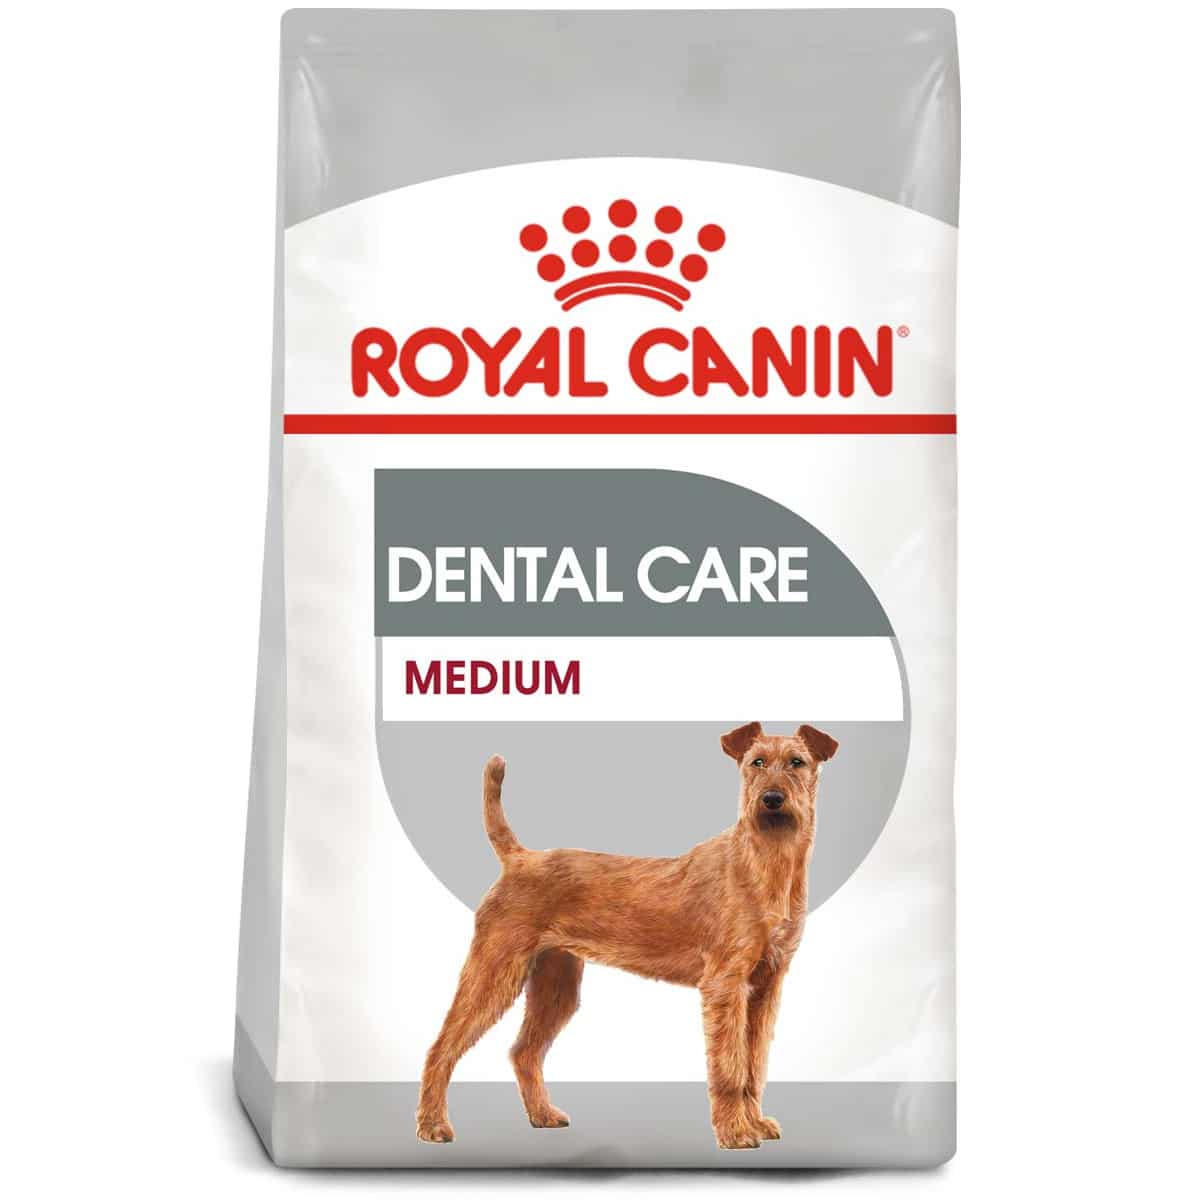 ROYAL CANIN DENTAL CARE MEDIUM Trockenfutter für mittelgroße Hunde mit empfindlichen Zähnen 10kg